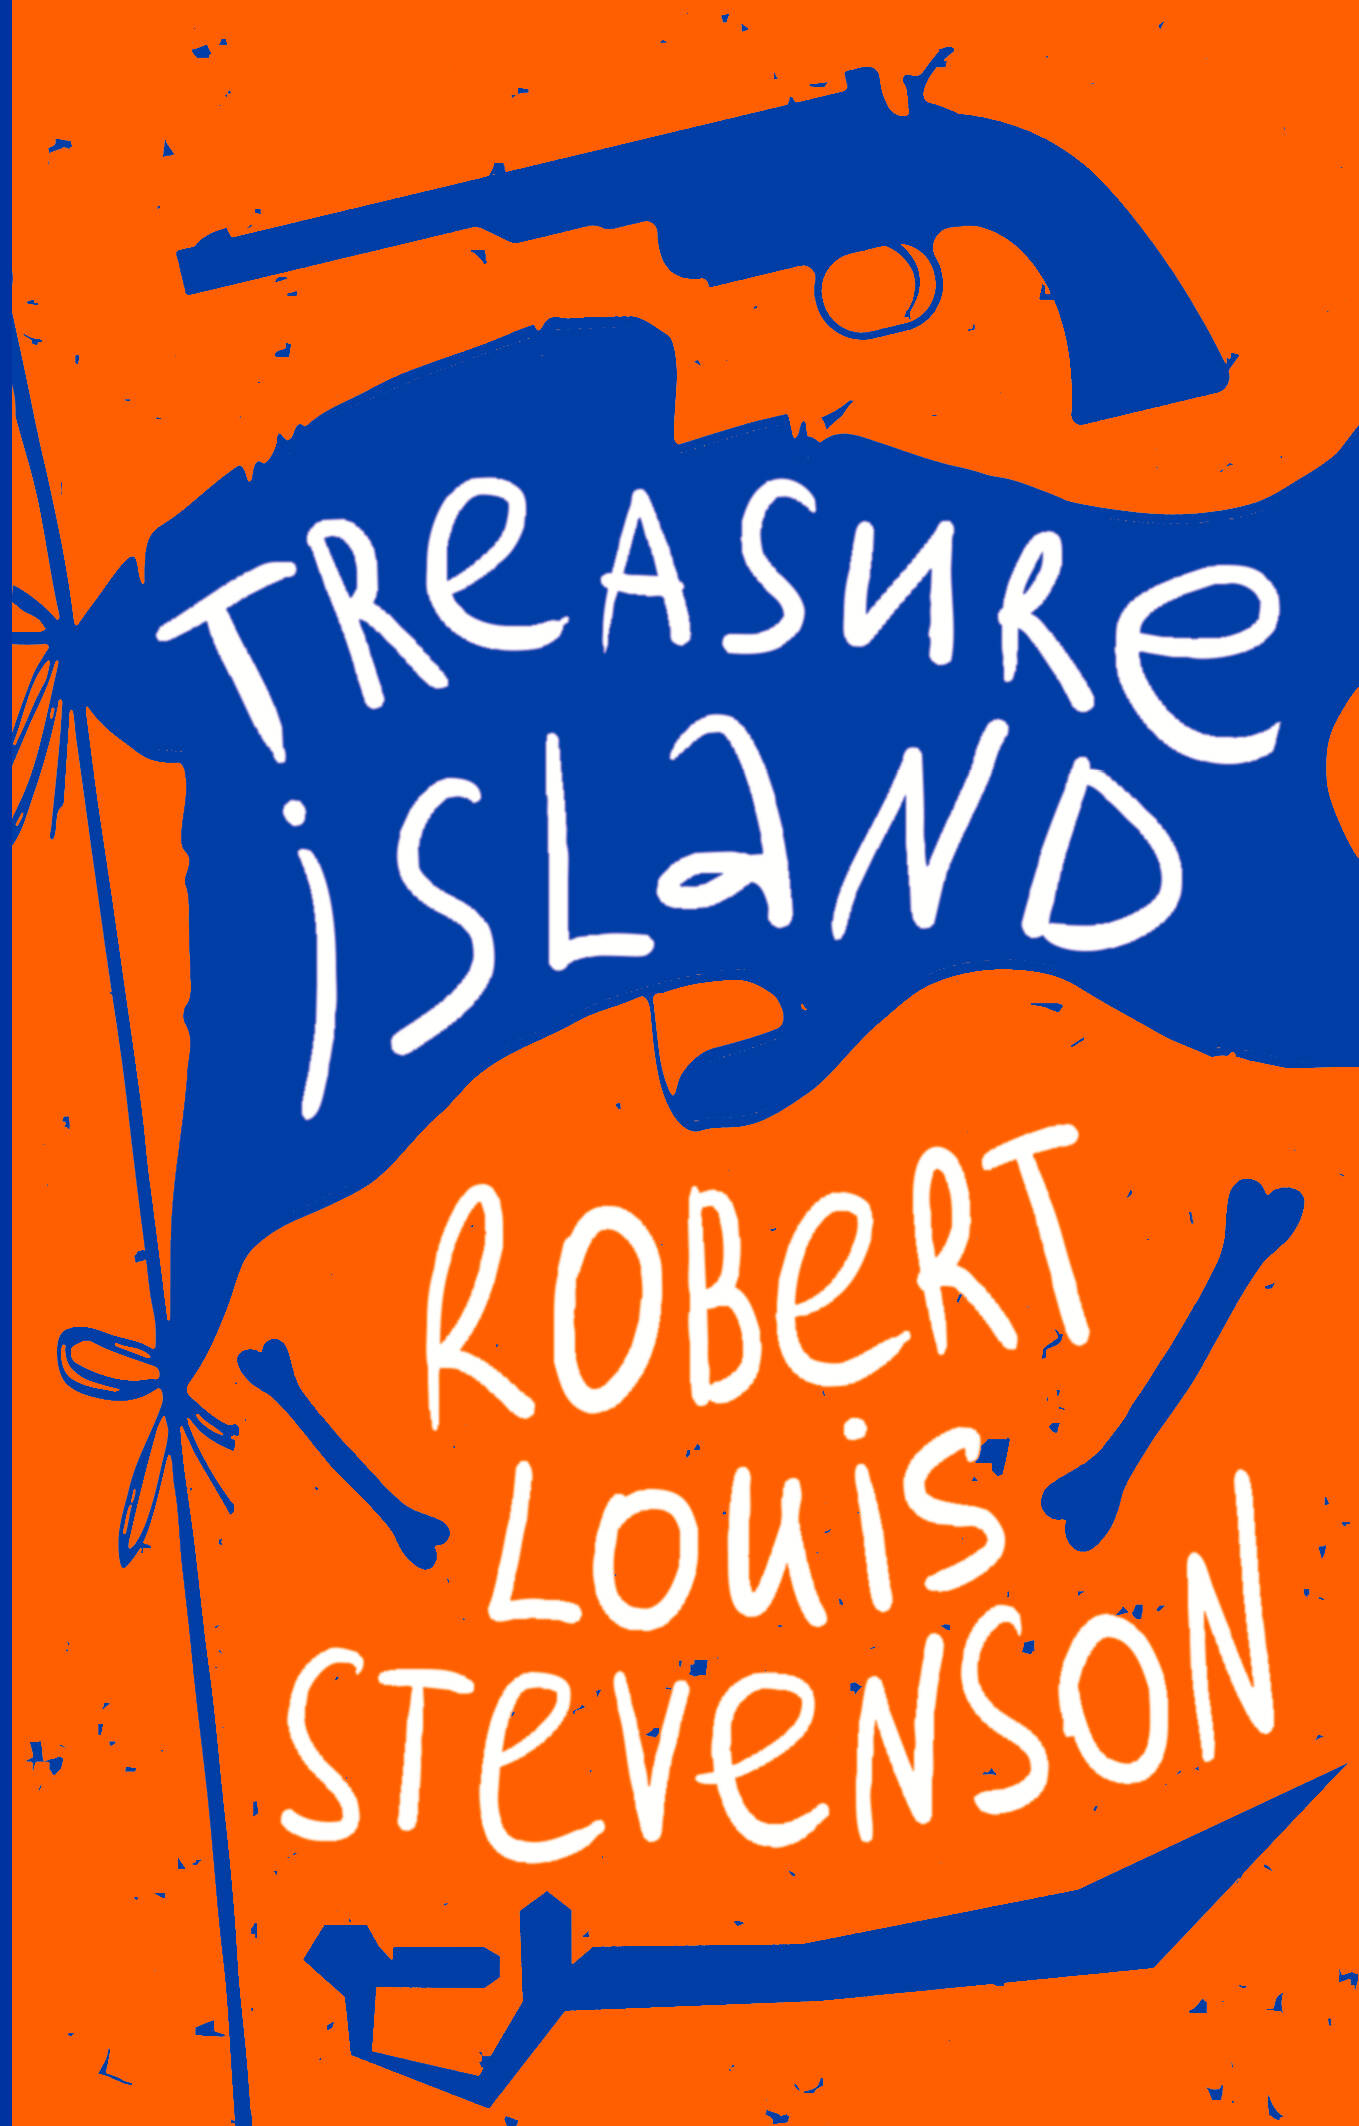 Стивенсон Роберт Льюис Balfour Treasure Island стивенсон роберт льюис balfour island nights entertainments